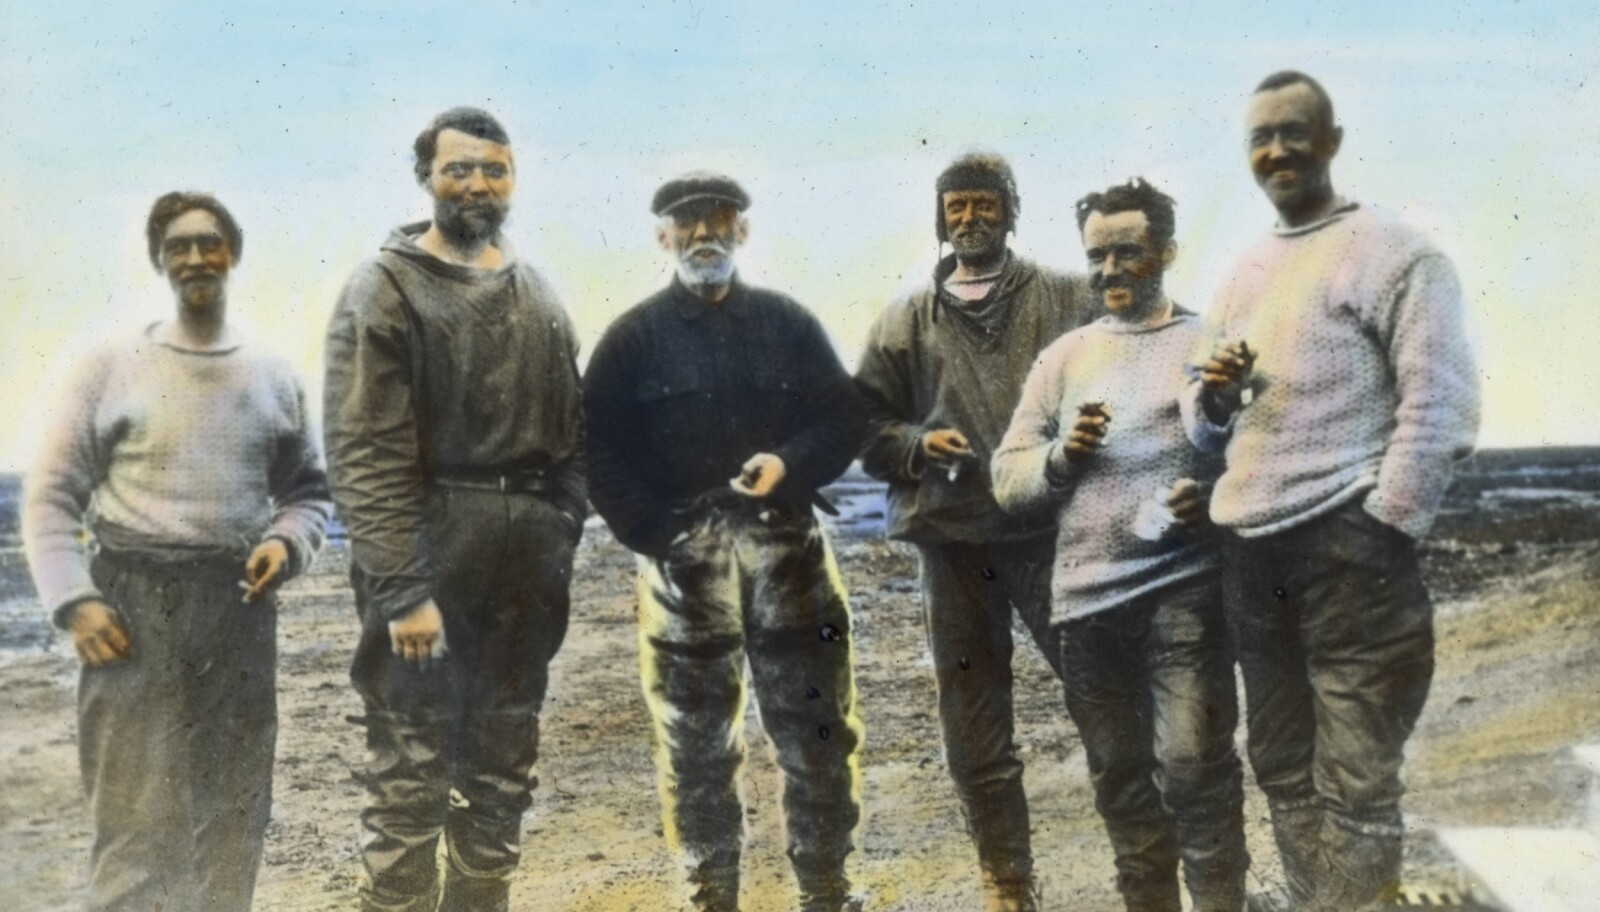 <b>TRYGG:</b> Roald Amundsen og Oskar Omdal (fra venstre), Hjalmar Riiser-Larsen, Leif Dietrichson, Karl Feucht og Lincoln Ellsworth røyker sigar i Ny-Ålesund etter å ha kommet seg unna døden isødet, takket være en ny oppfinnelse.